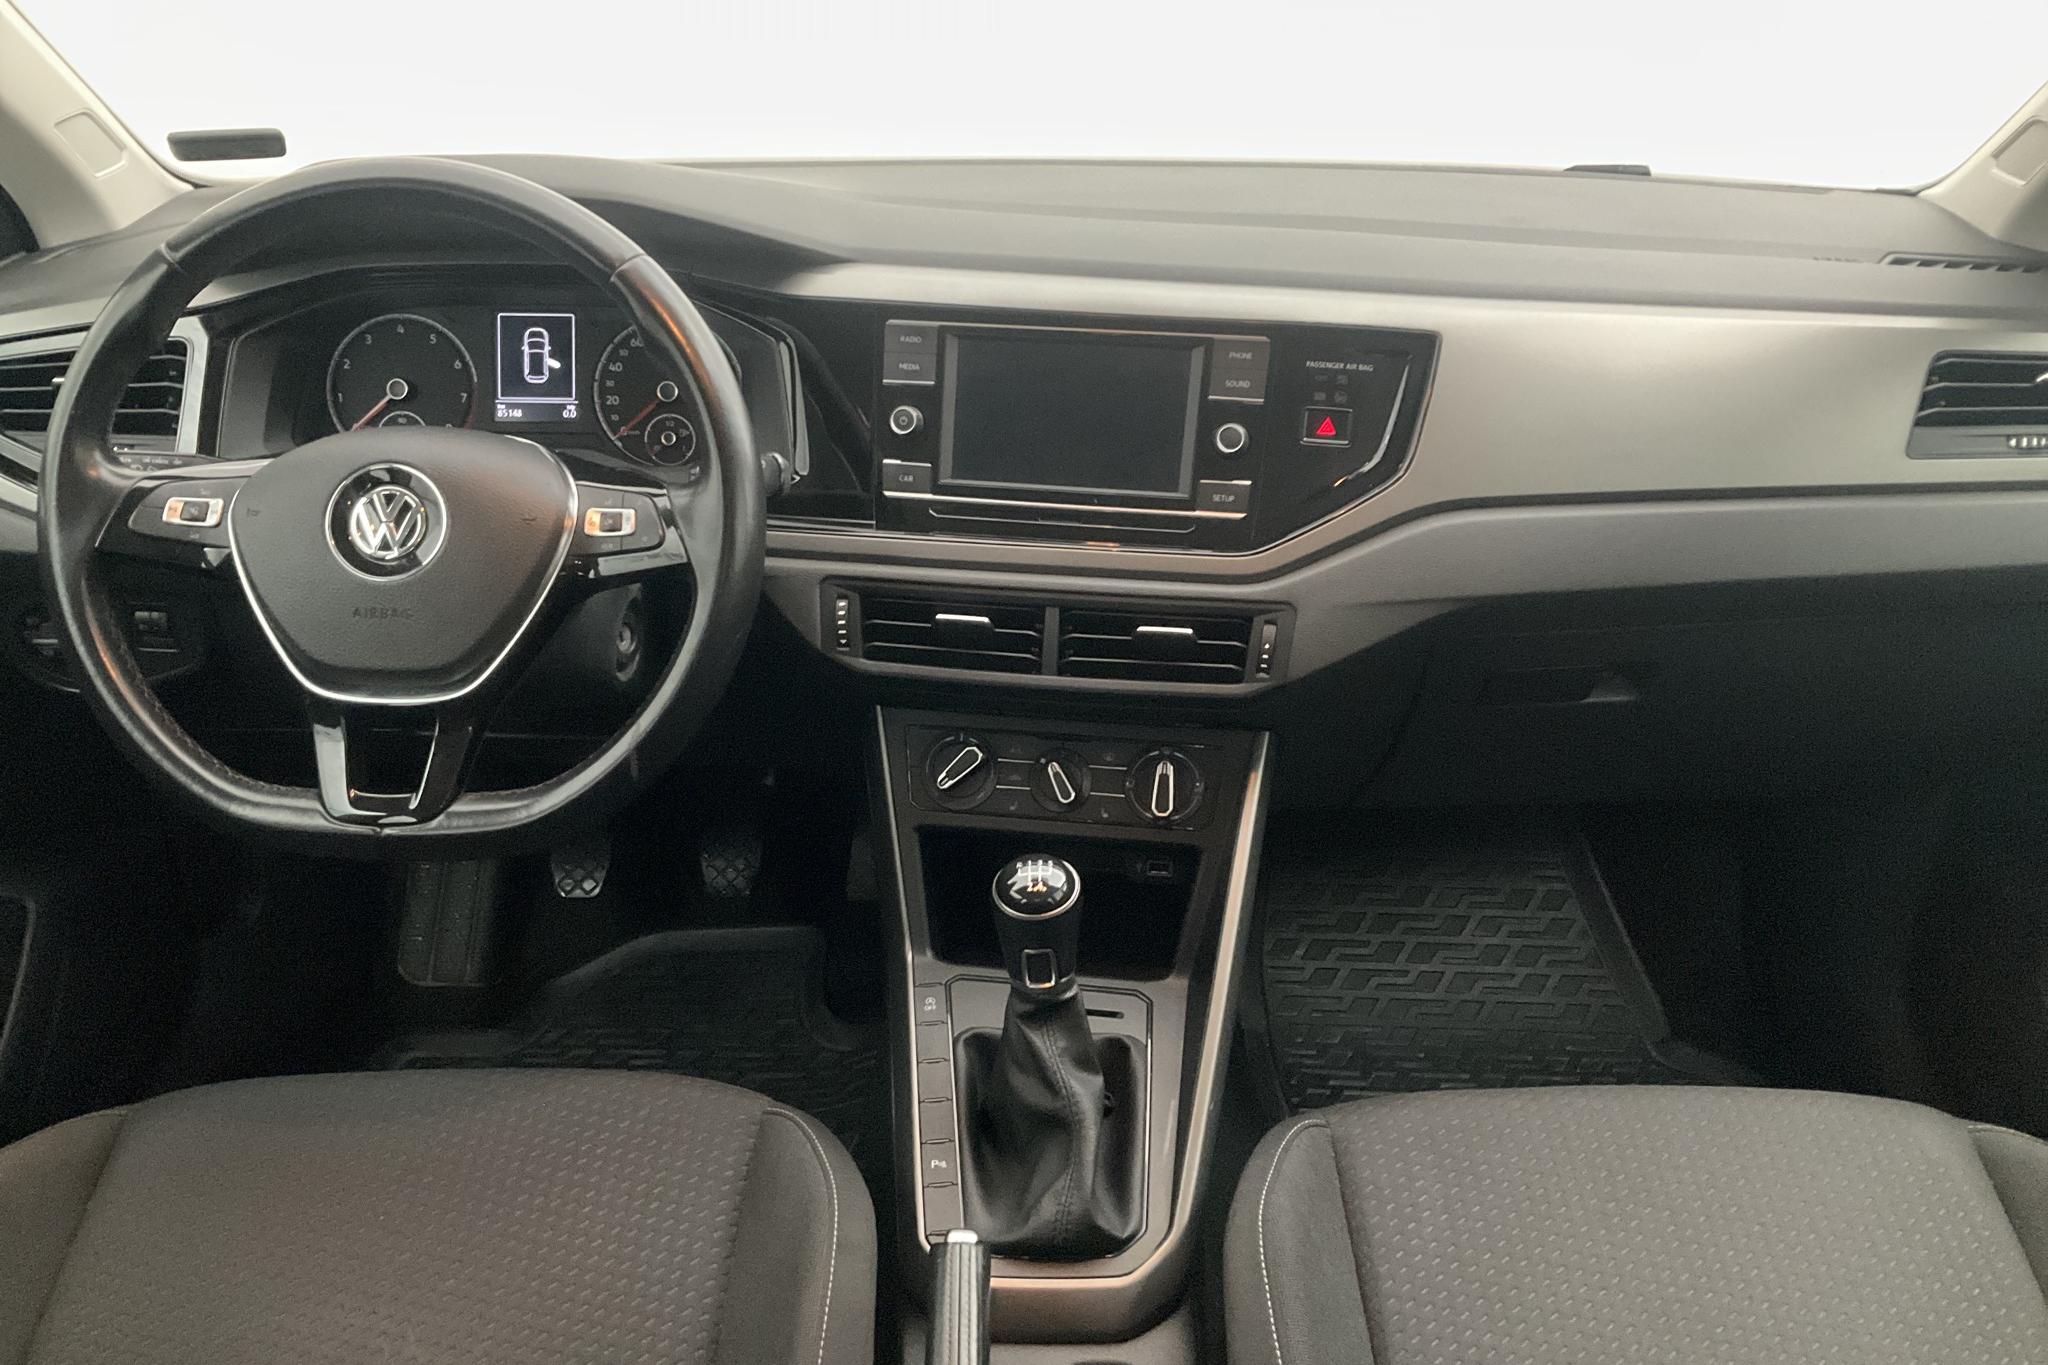 VW Polo 1.0 TSI 5dr (95hk) - 85 150 km - Manual - silver - 2019